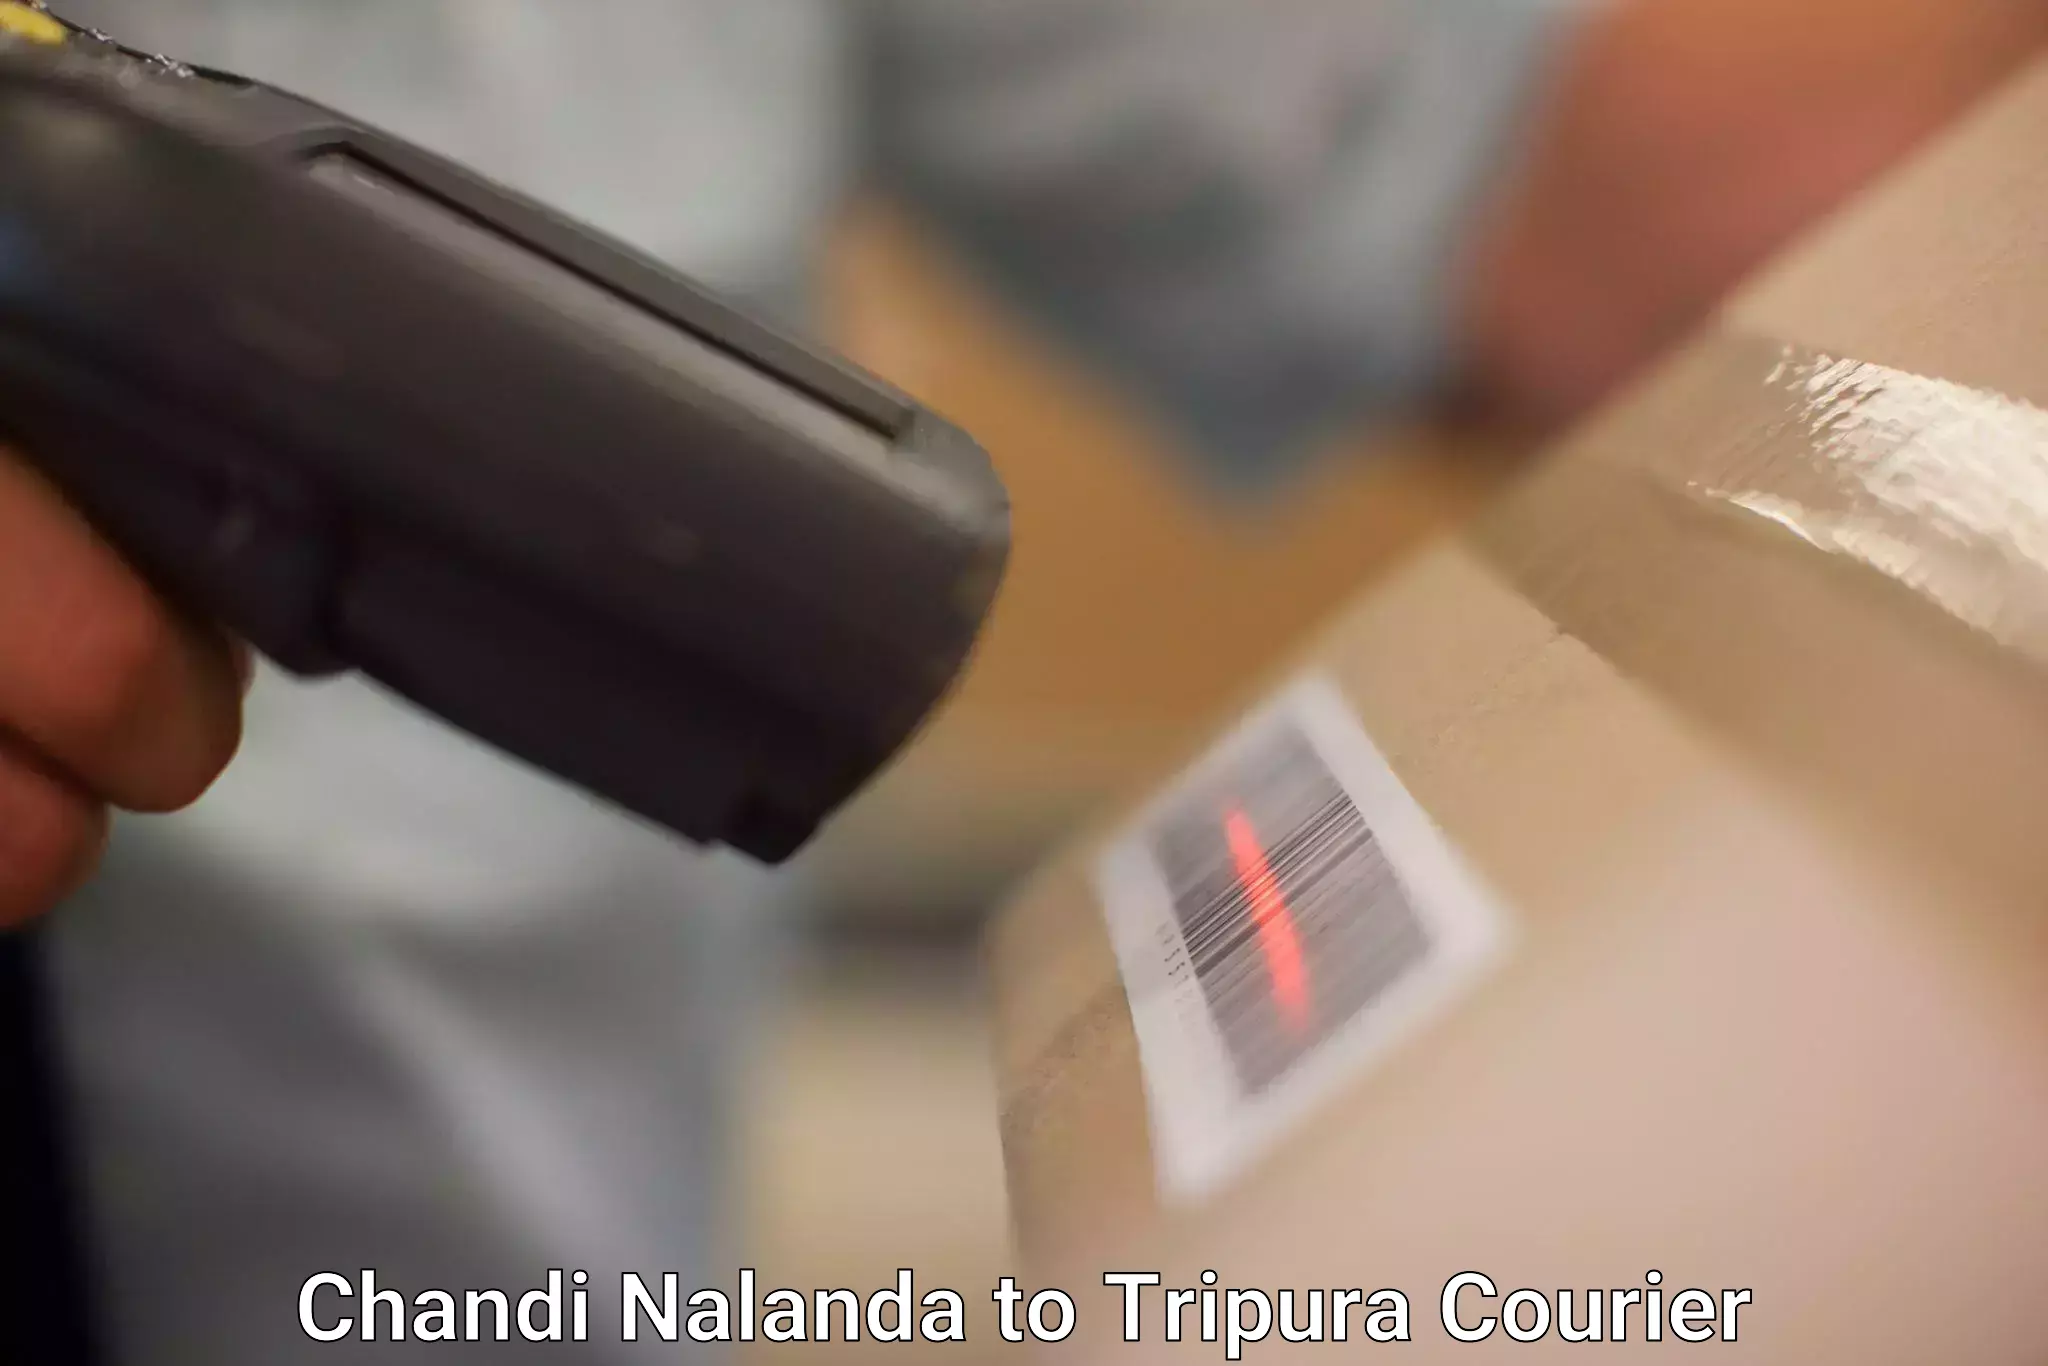 Courier service comparison Chandi Nalanda to Agartala